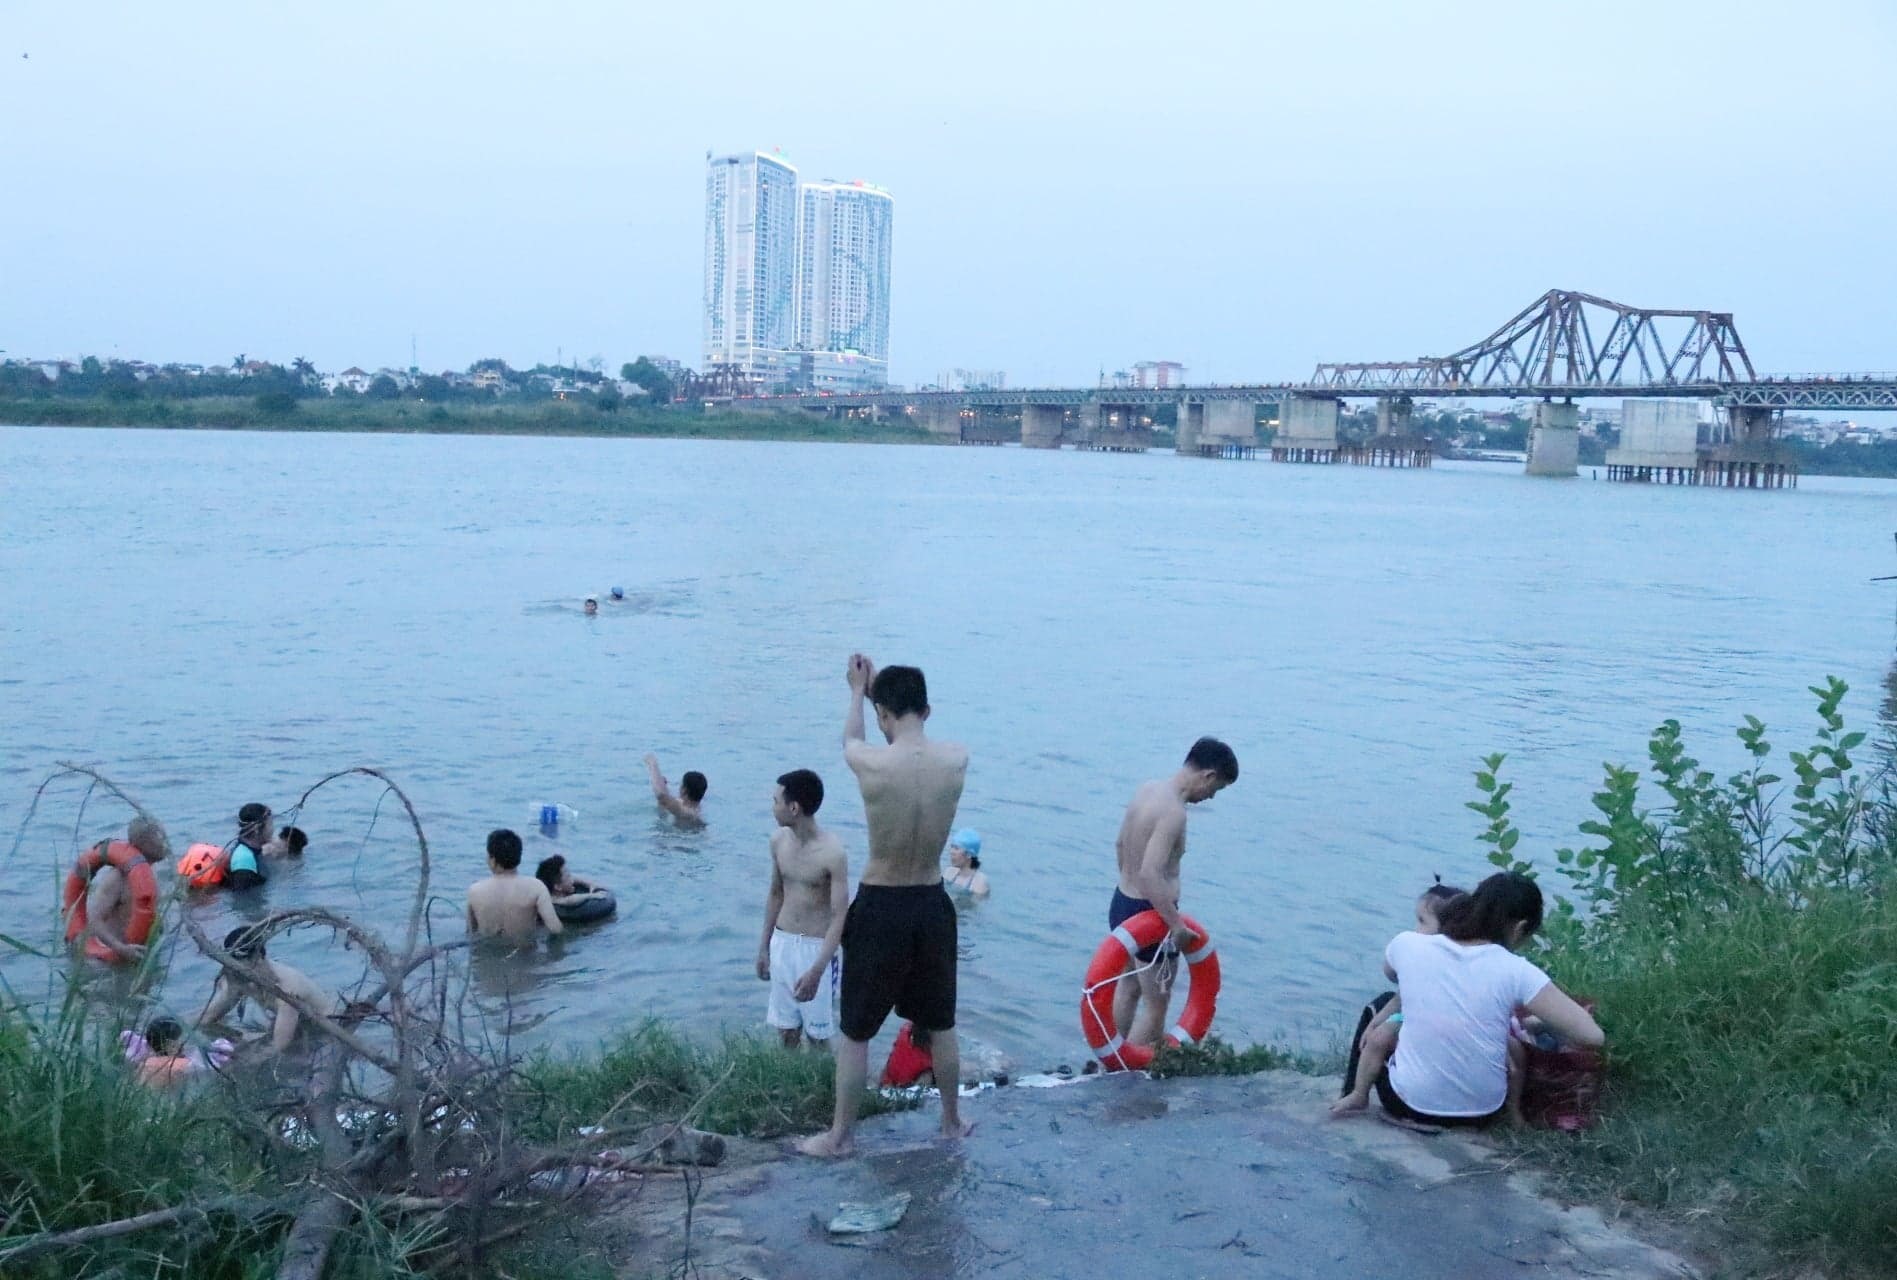 Bãi tắm tự phát ở dưới chân cầu Long Biên được nhiều người dân đắc biệt yêu thích.